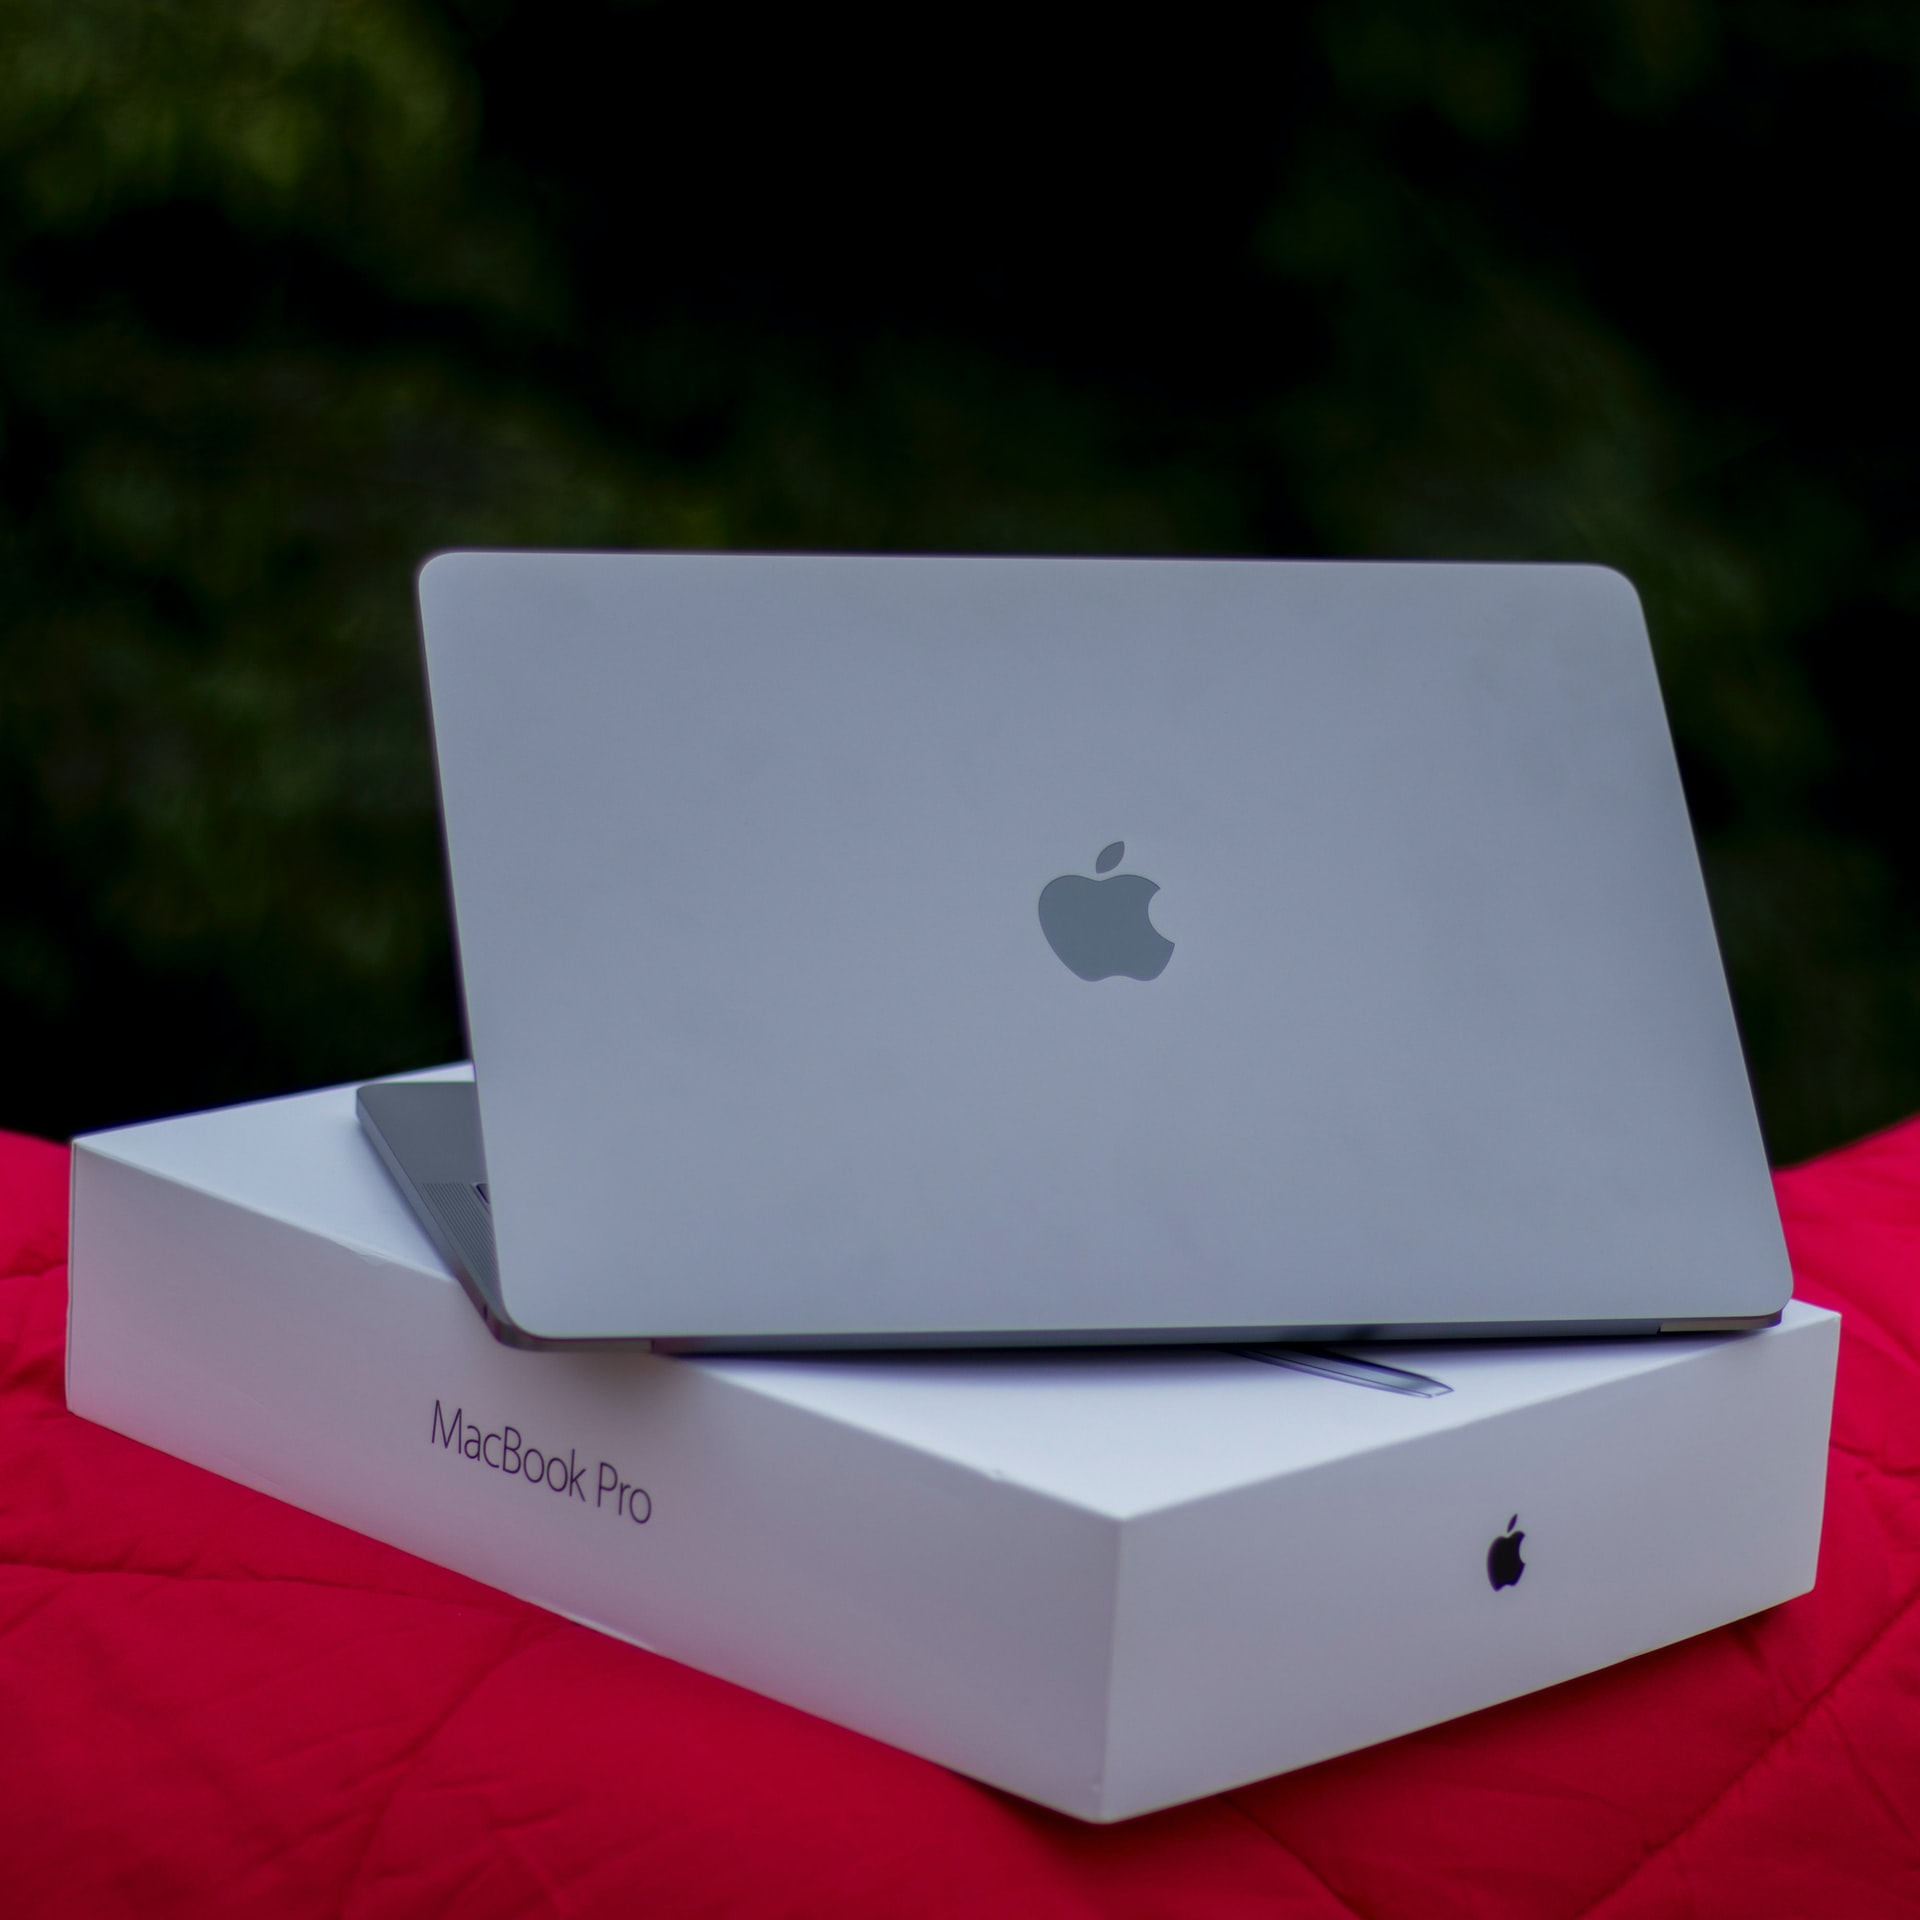 Fabrycznie nowy MacBook Pro stojący na pudełku